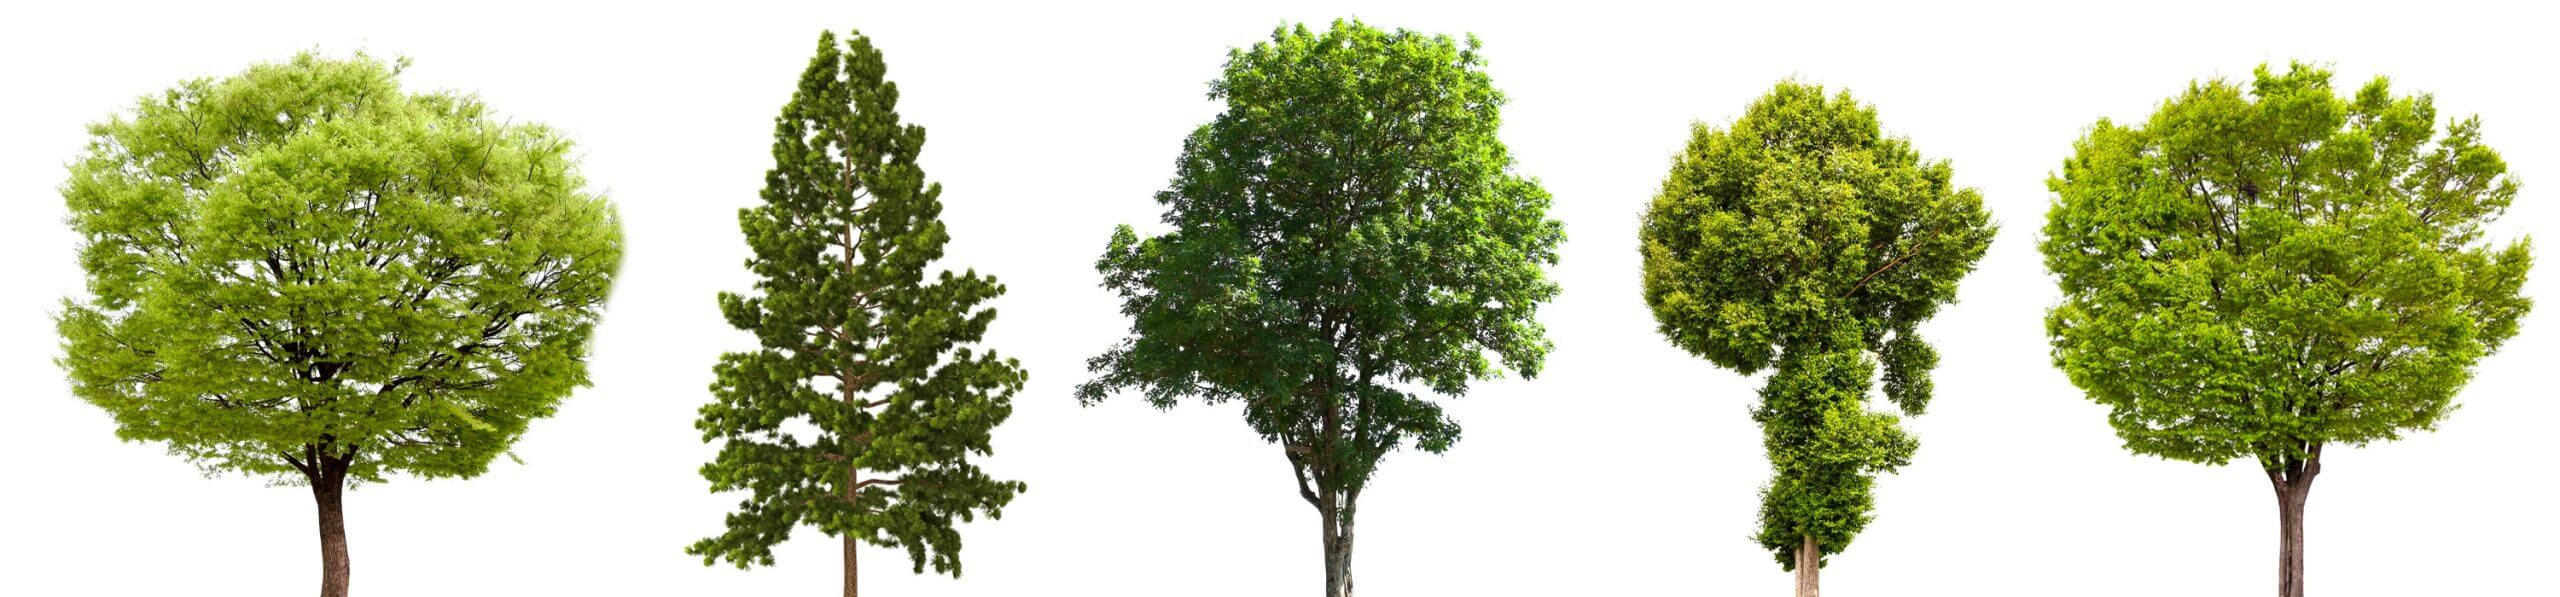 Sensoren & Sender Smart Tree Screening Bäume